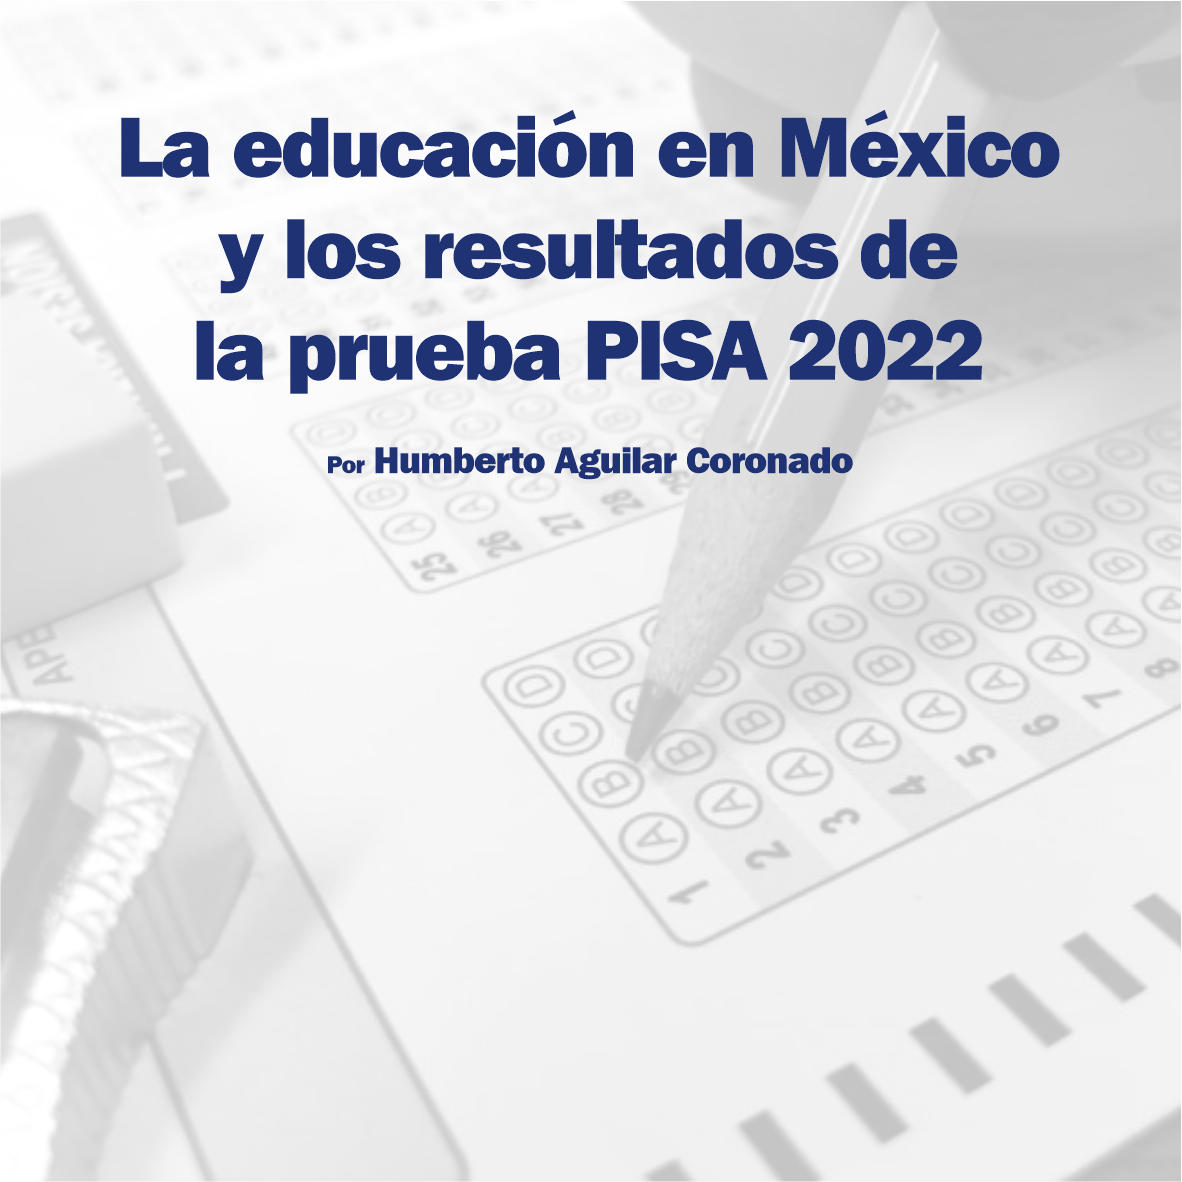 La educación en México y los resultados de la prueba PISA 2022.